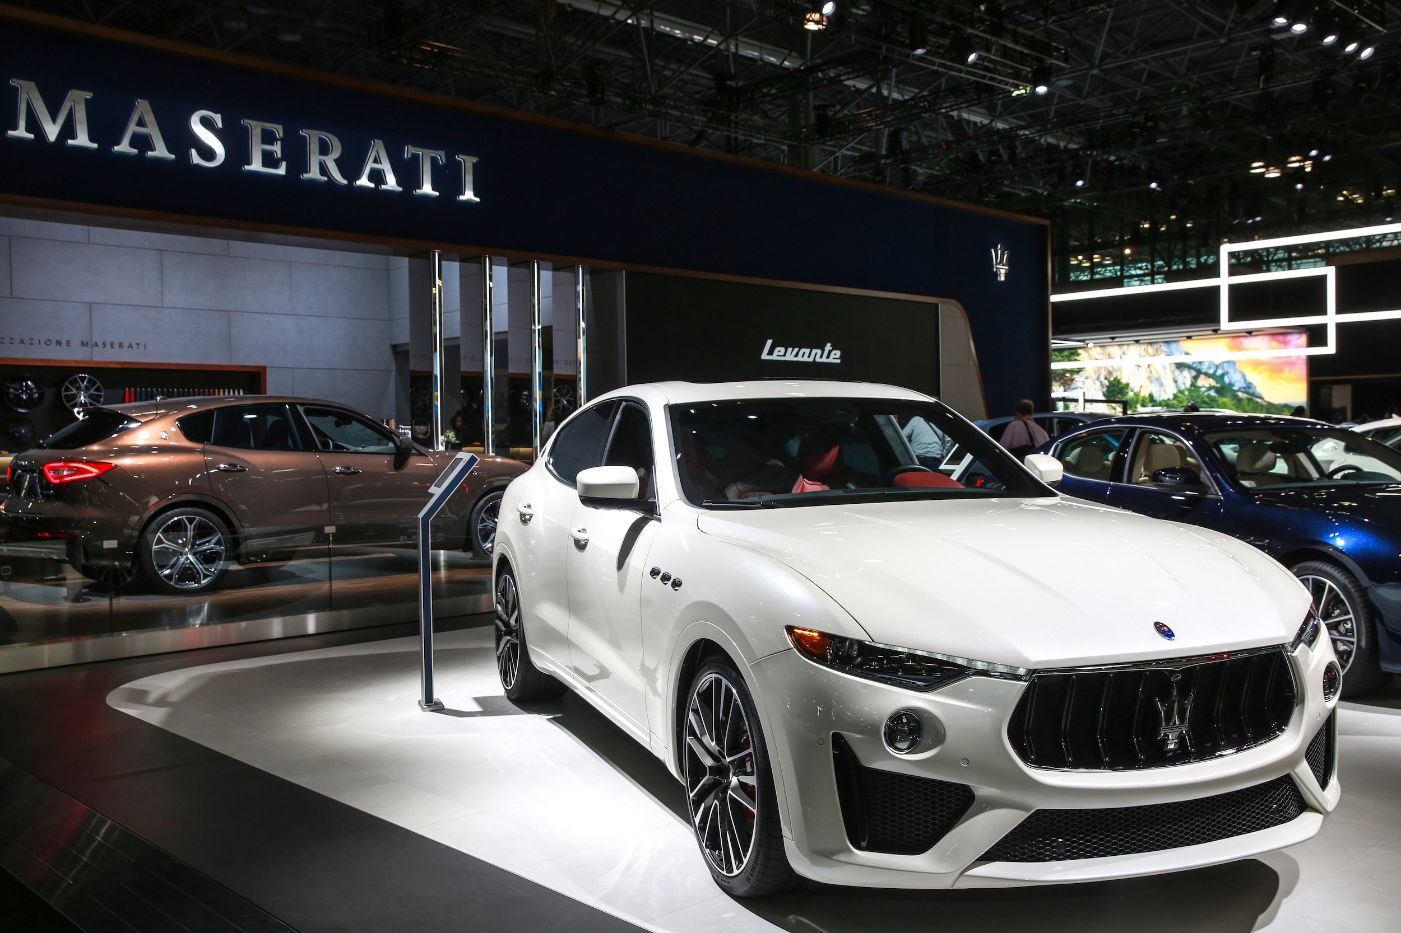 White Maserati model in showroom